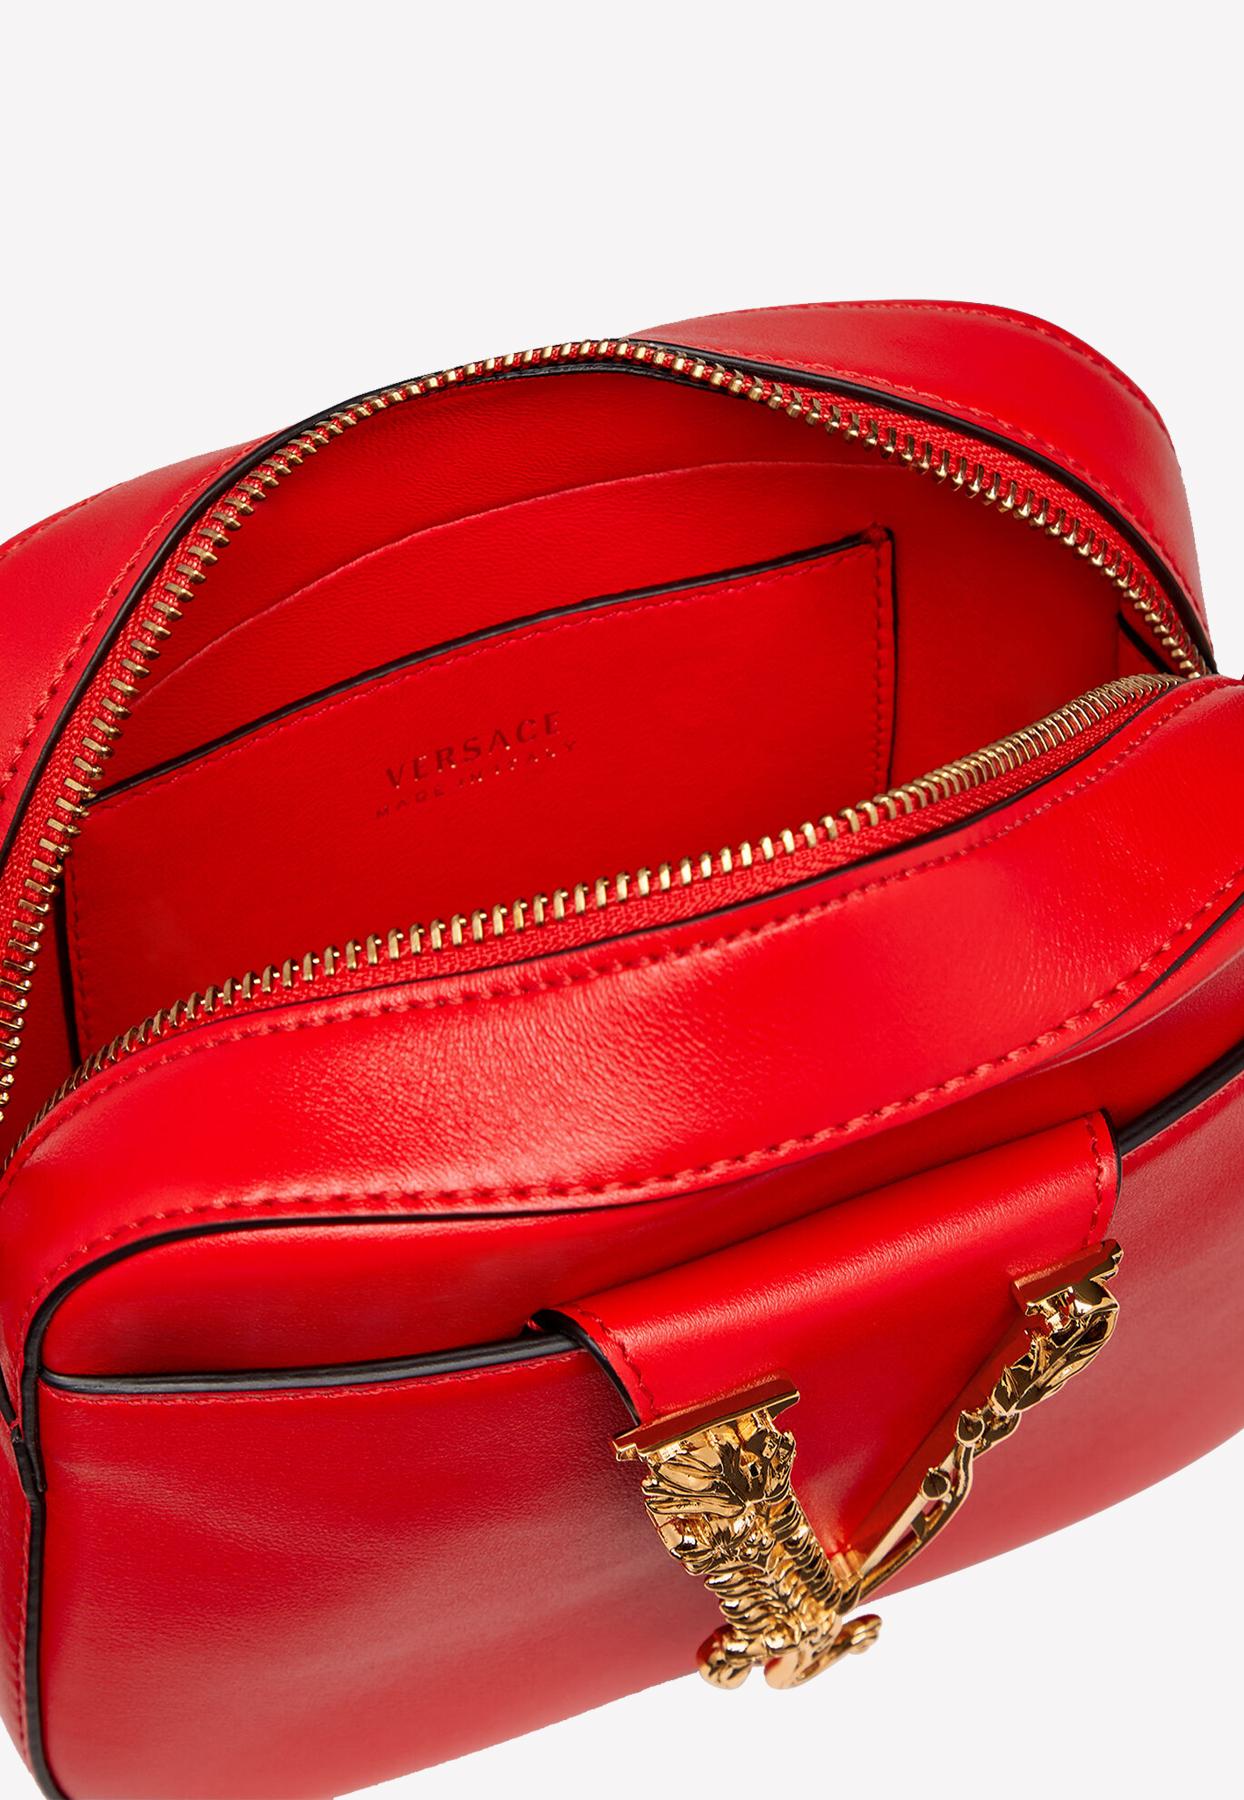 Versace Virtus Rose Applique Bag Leather Shoulder Crossbody Red